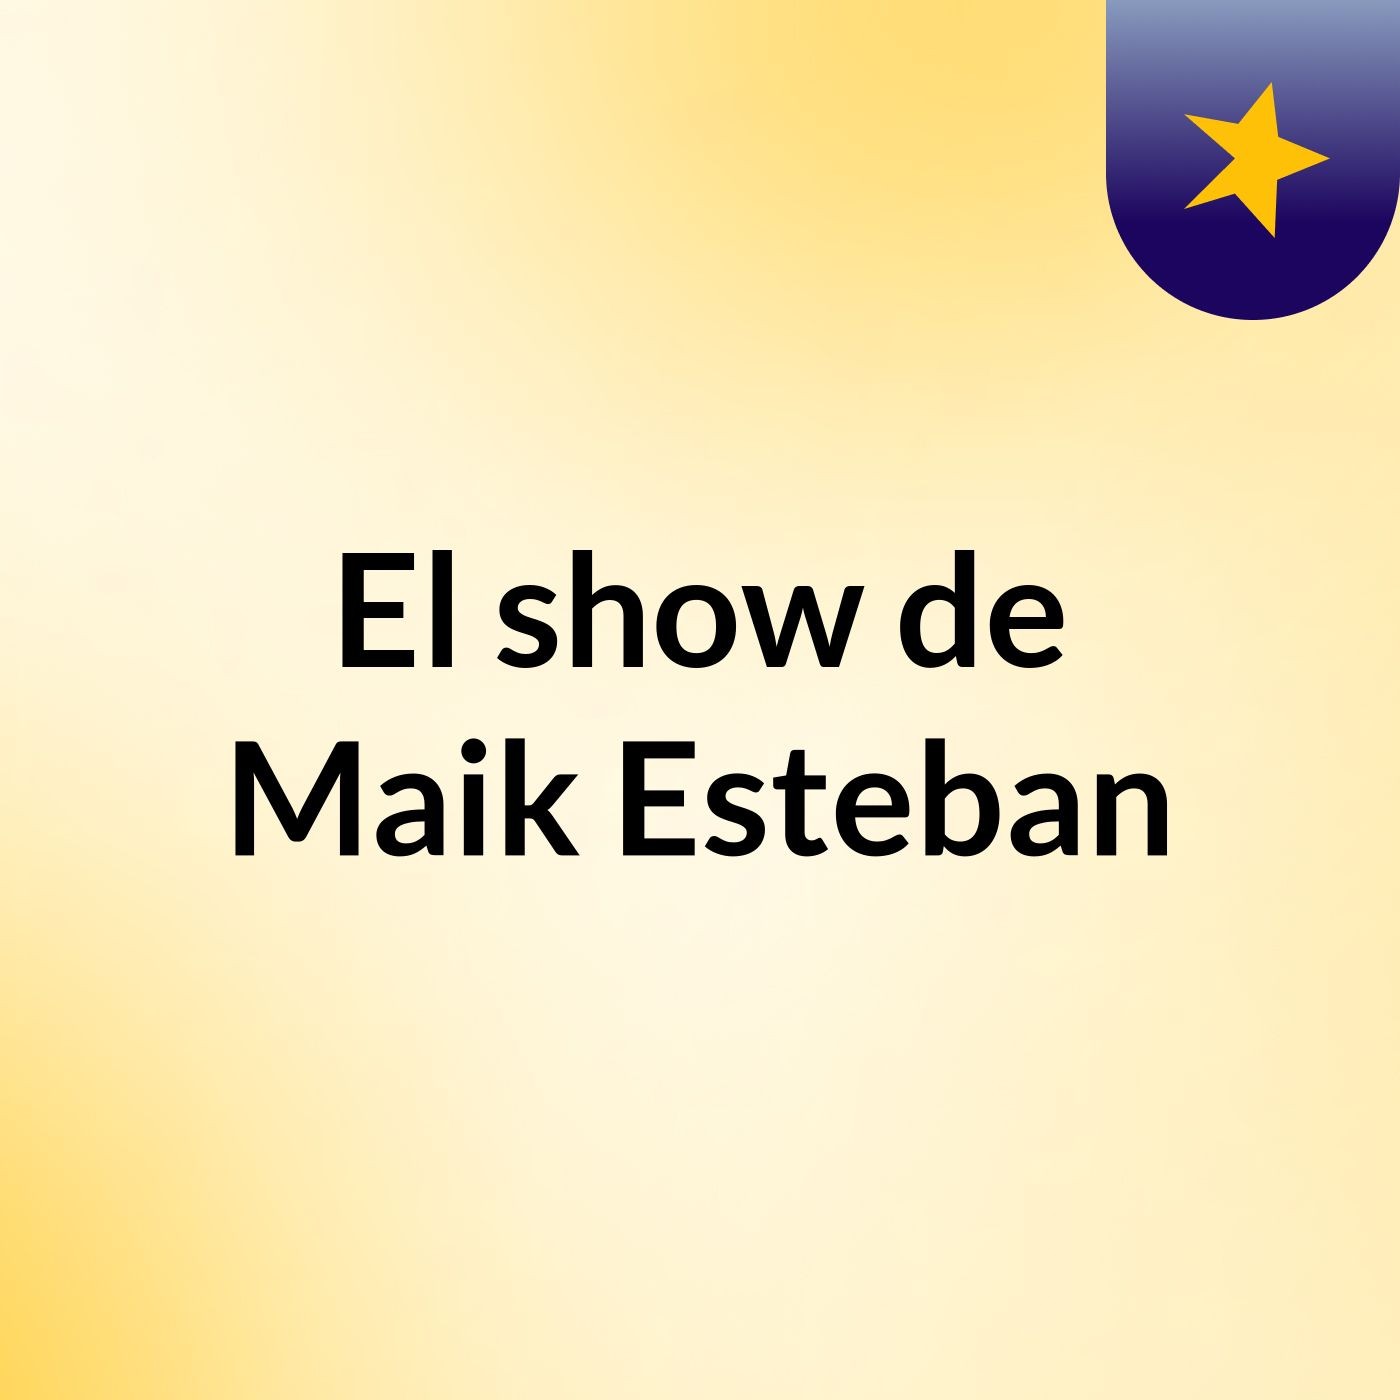 El show de Maik Esteban